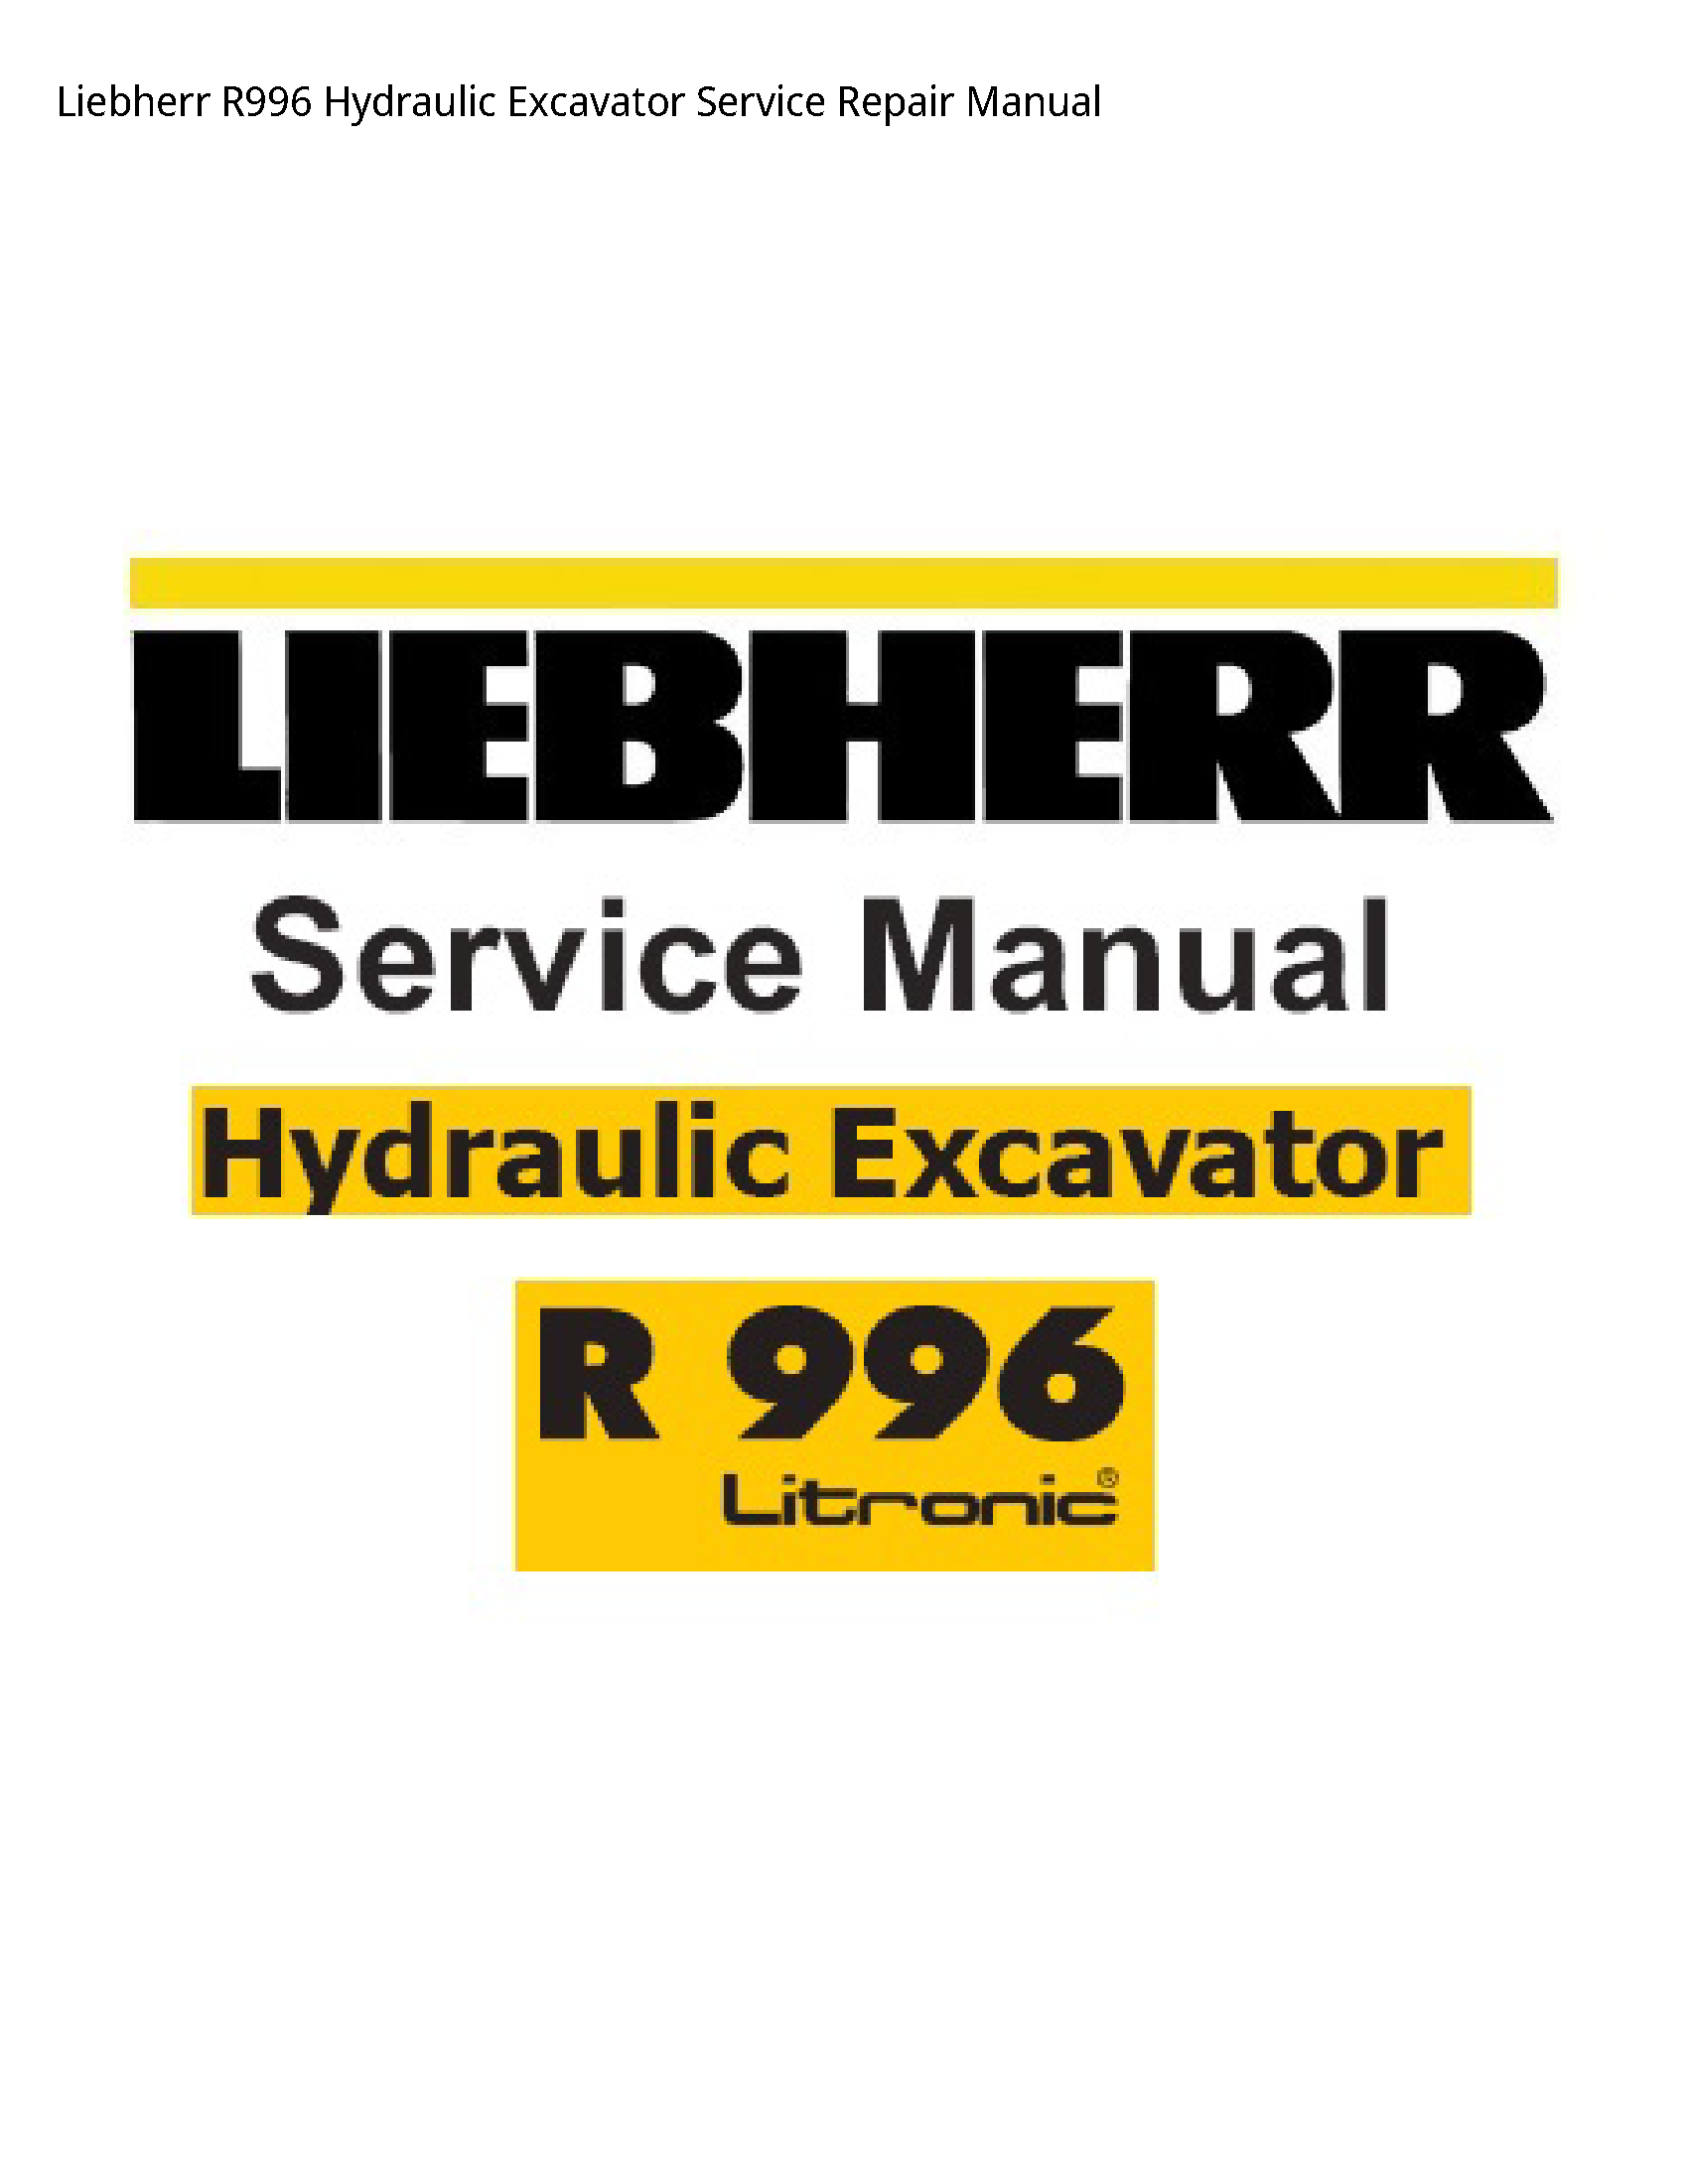 Liebherr R996 Hydraulic Excavator manual